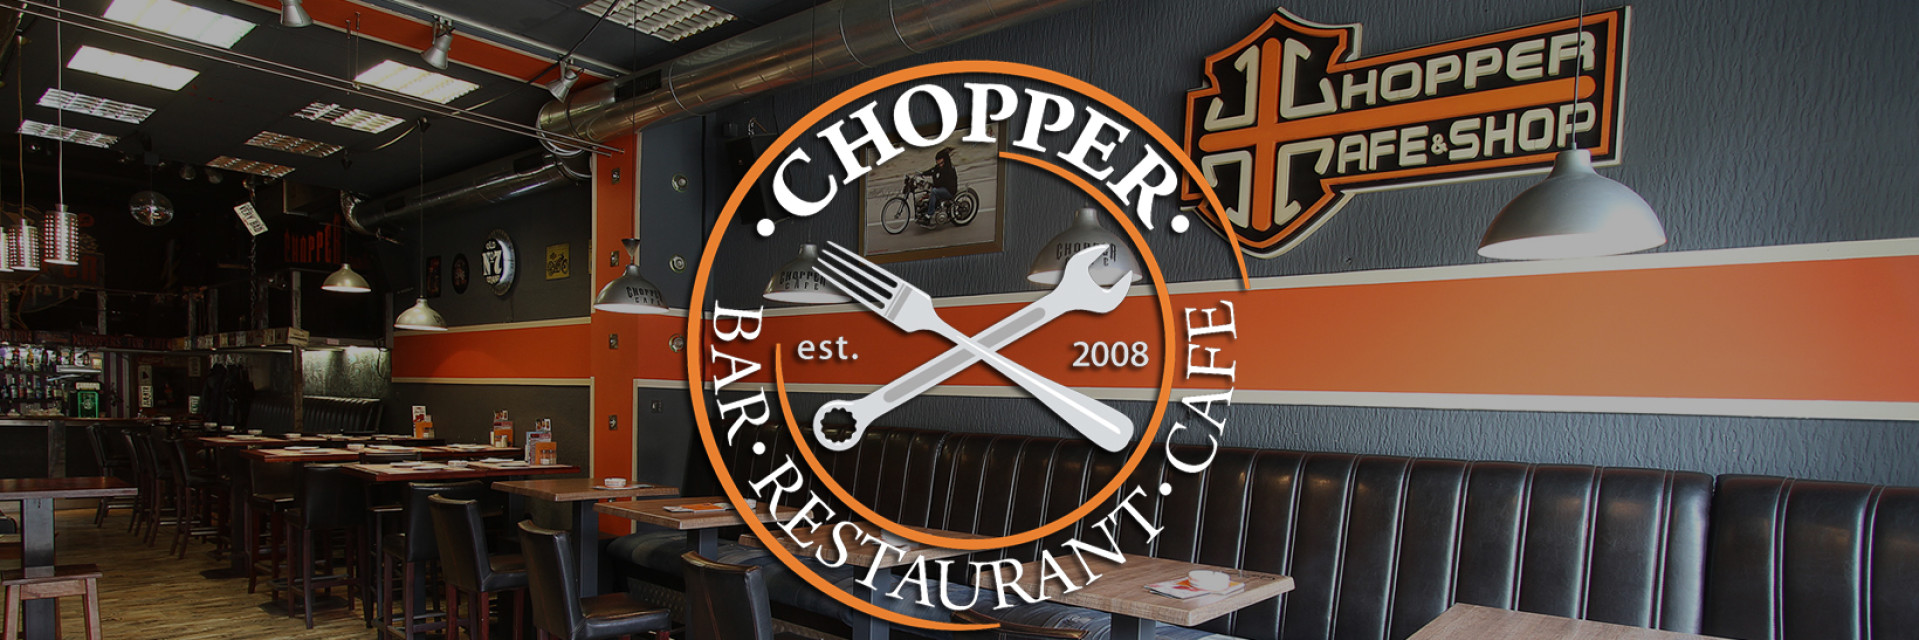 Menu Chopper Cafe